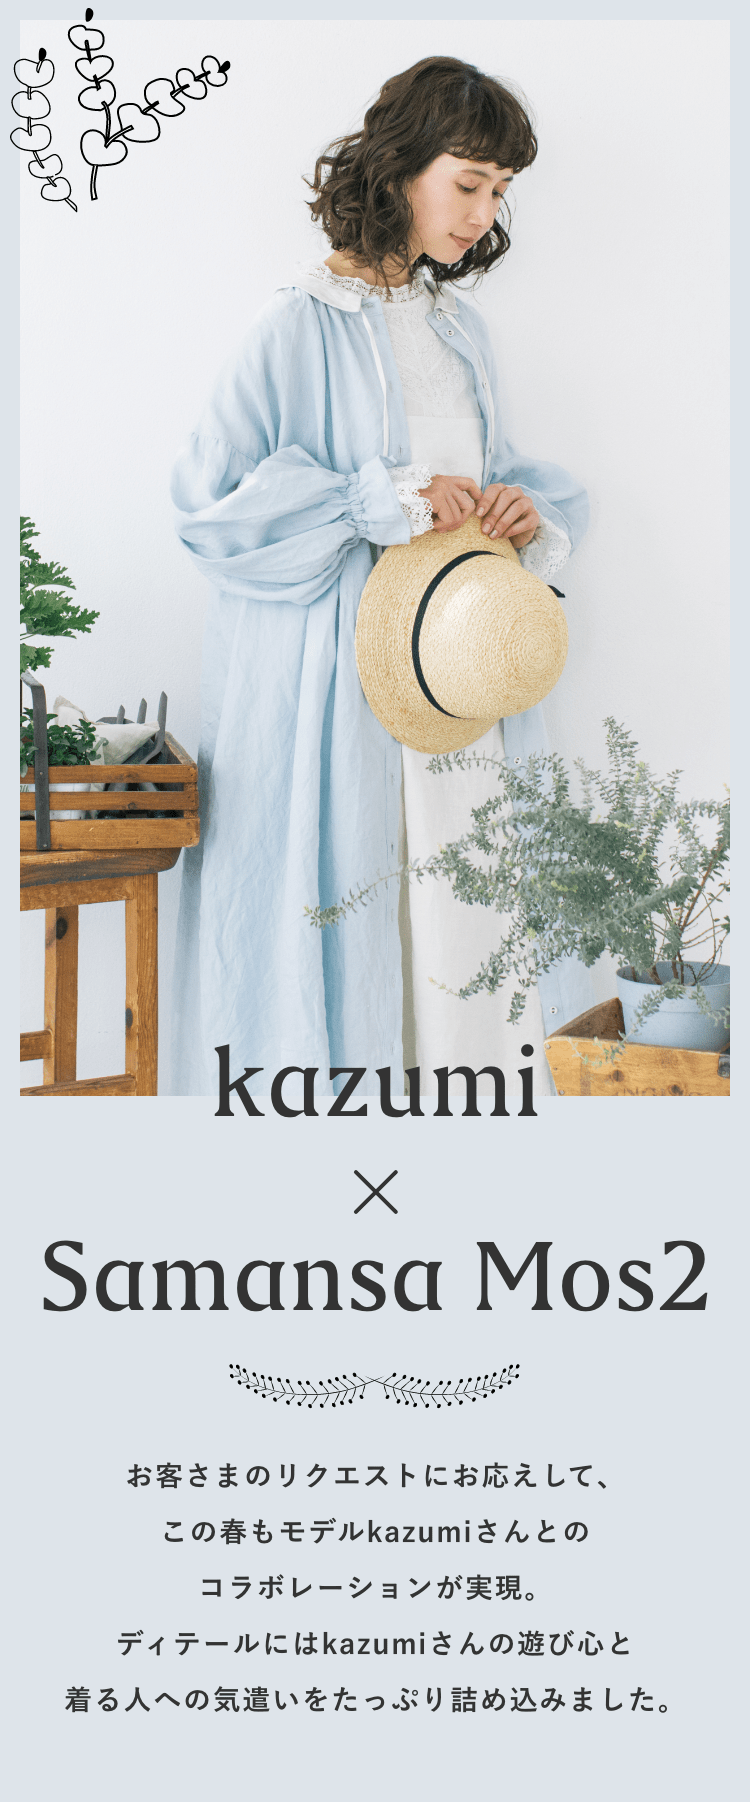 Kazumi x Samansa Mos2 Part2 今回はSamansa Mos2の象徴的な 